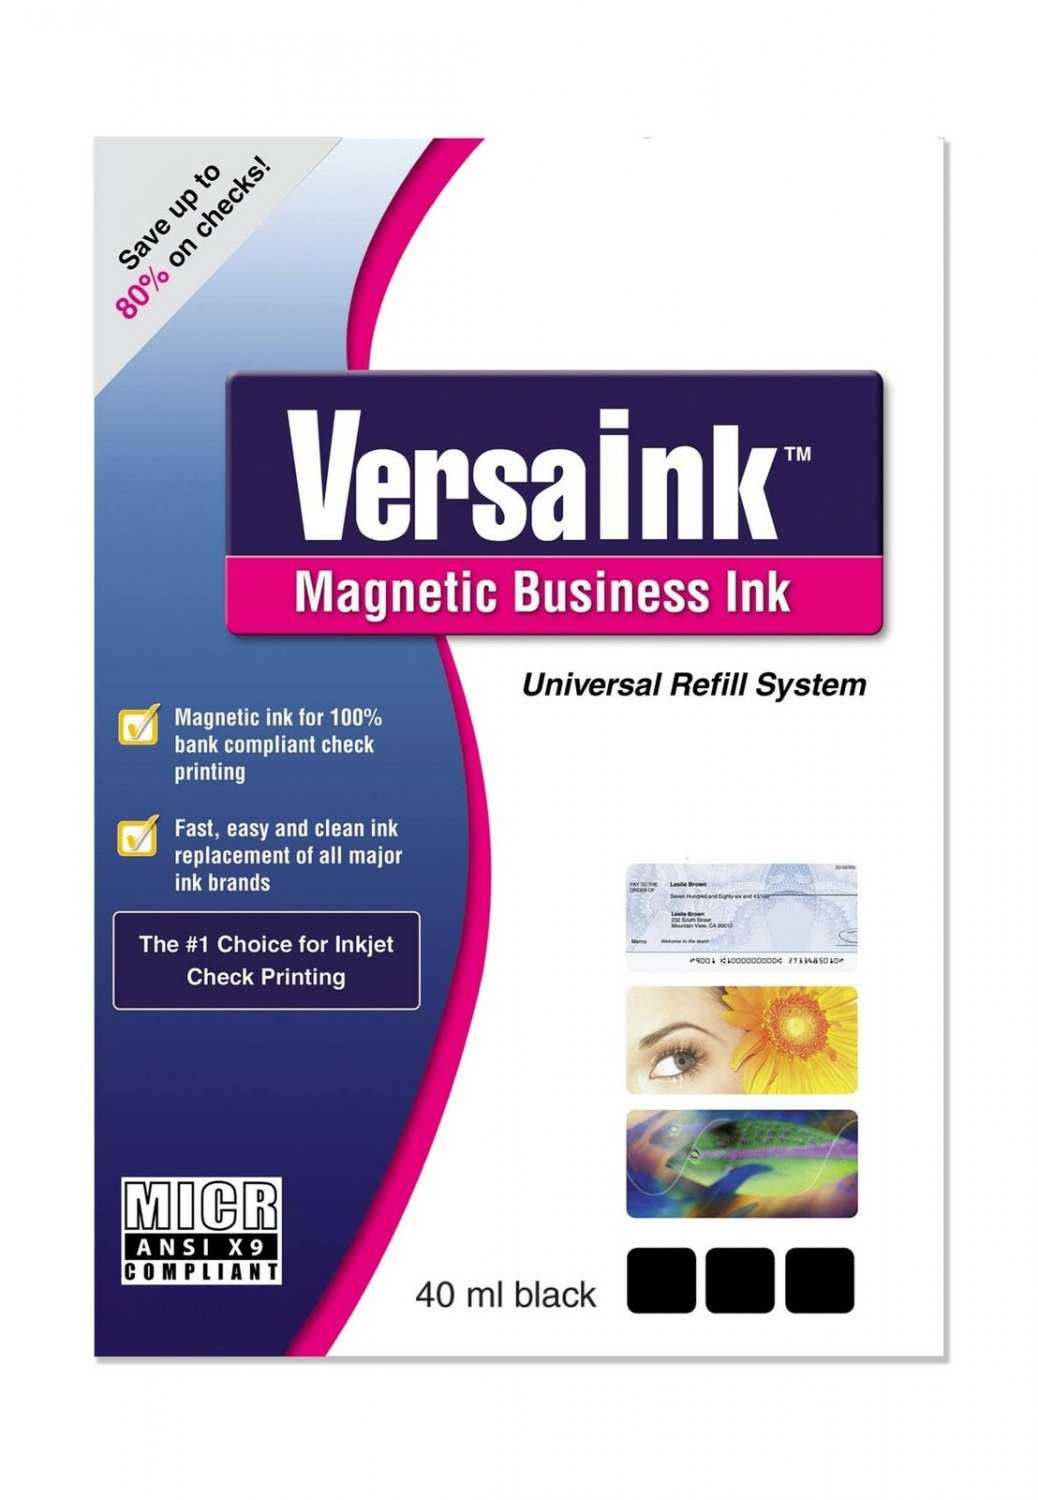 VersaInk Magnetic Business Ink Universal Refill Kit Ultra-durable Waterproof